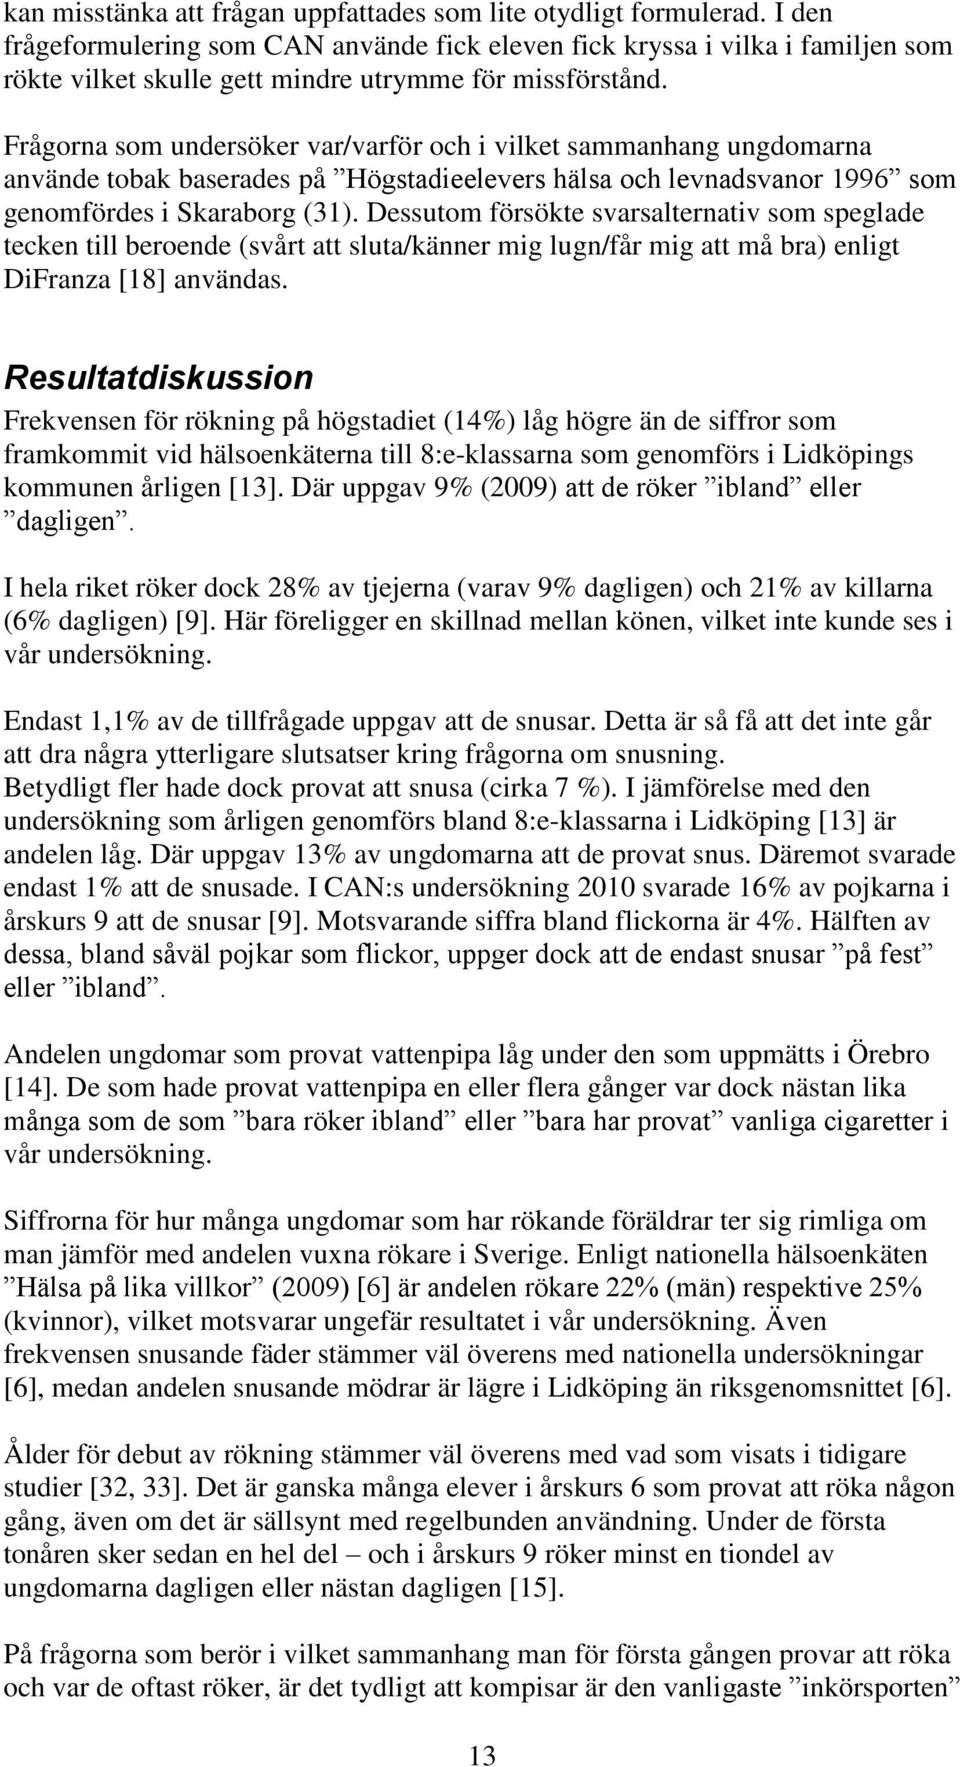 Frågorna som undersöker var/varför och i vilket sammanhang ungdomarna använde tobak baserades på Högstadieelevers hälsa och levnadsvanor 1996 som genomfördes i Skaraborg (31).